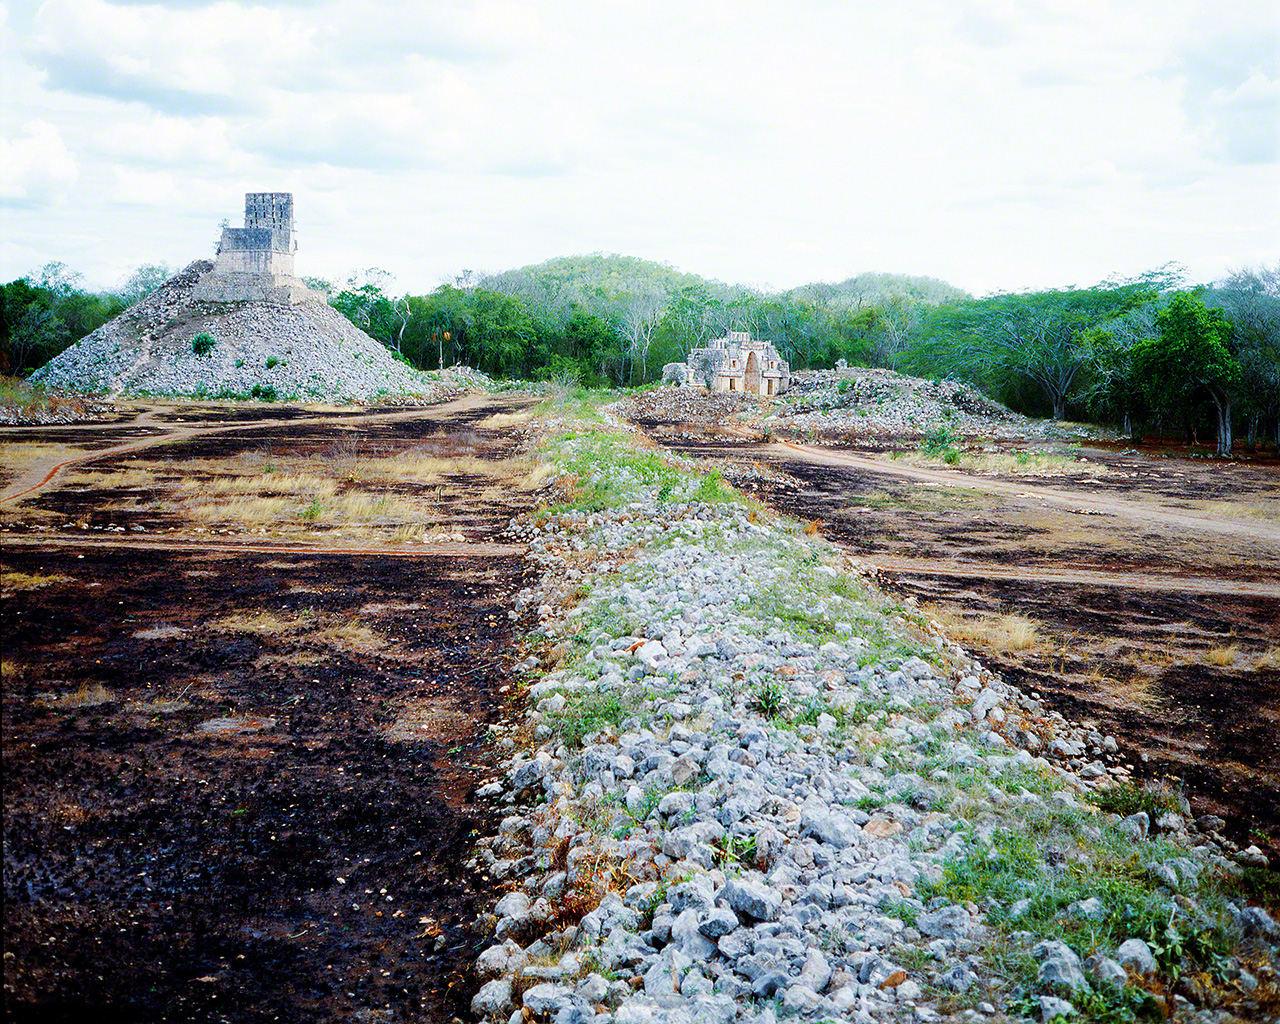 Fotografía de un camino empedrado en unas ruinas mayas de México, tomada en 1981, durante el viaje de investigación que me despertó la vocación de fotógrafo de festivales.